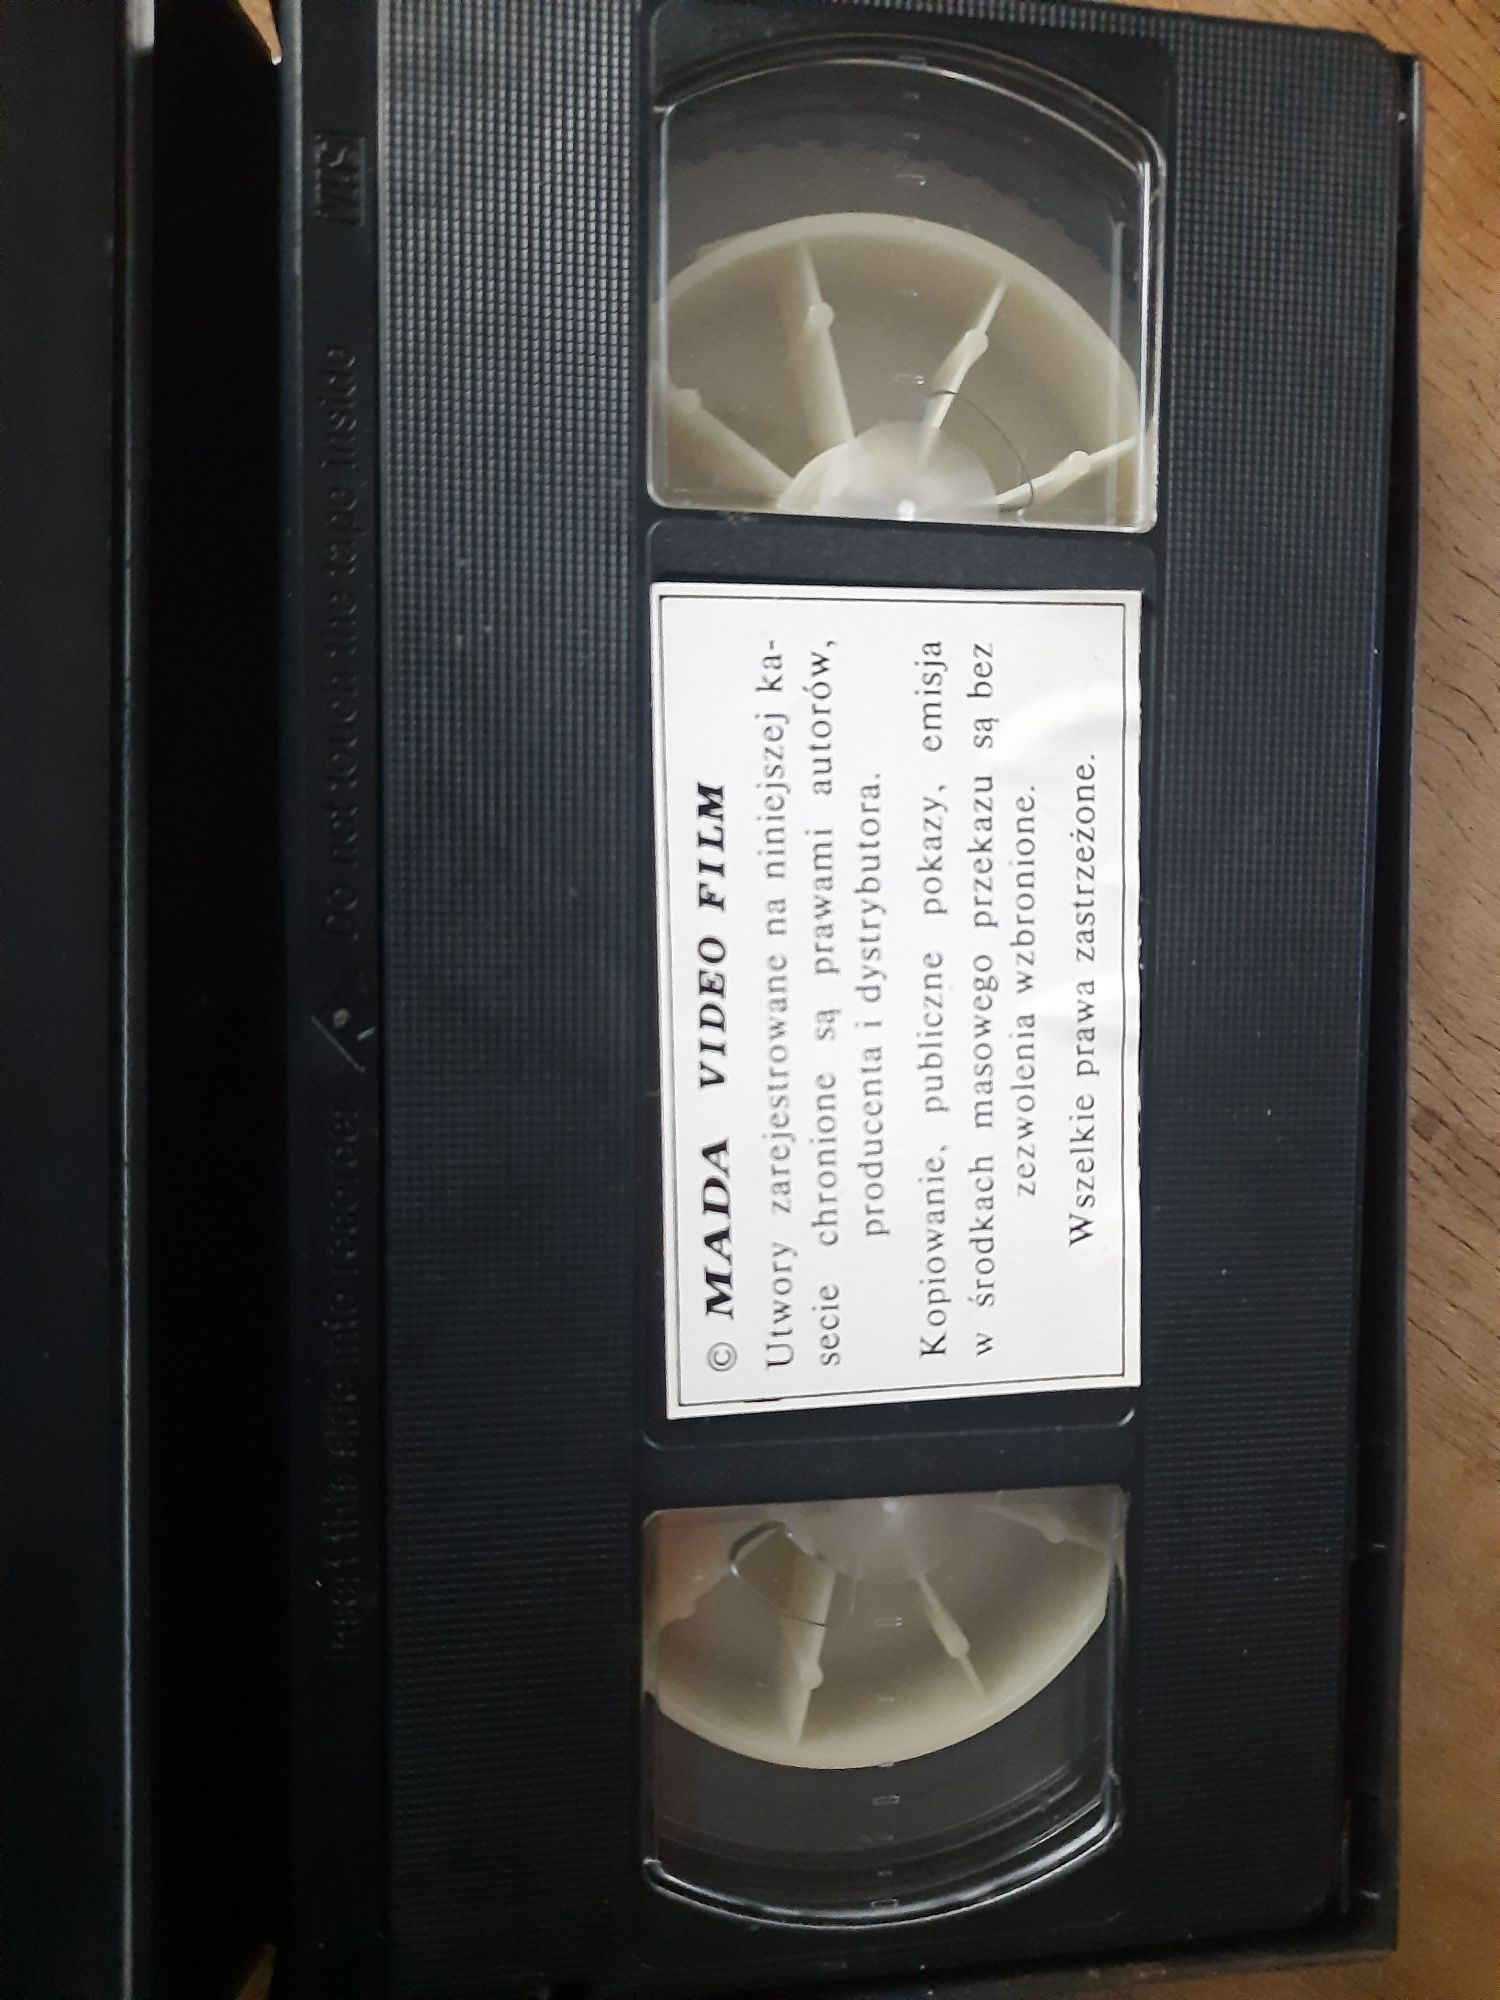 Pszczółka Maja - Unikat! cz.4 bajka kaseta VHS video